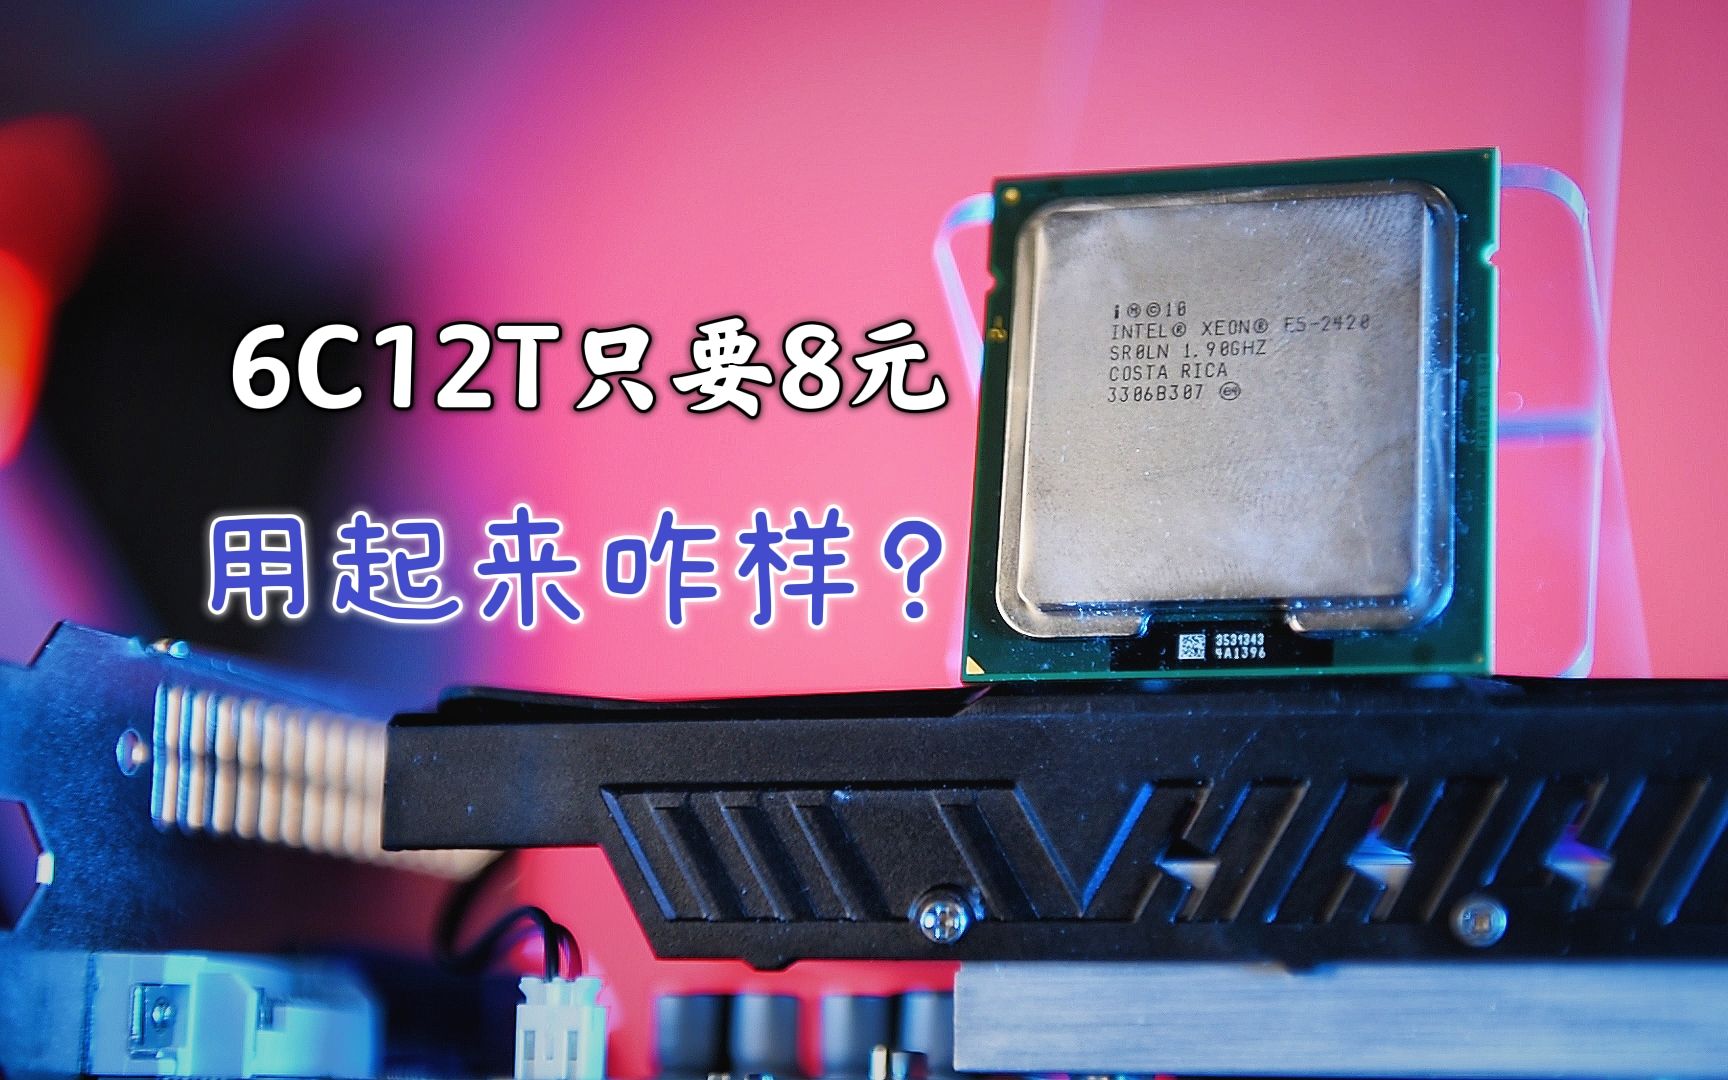 镭波 F650全新上市 搭载i7 4700QM处理器_天极网